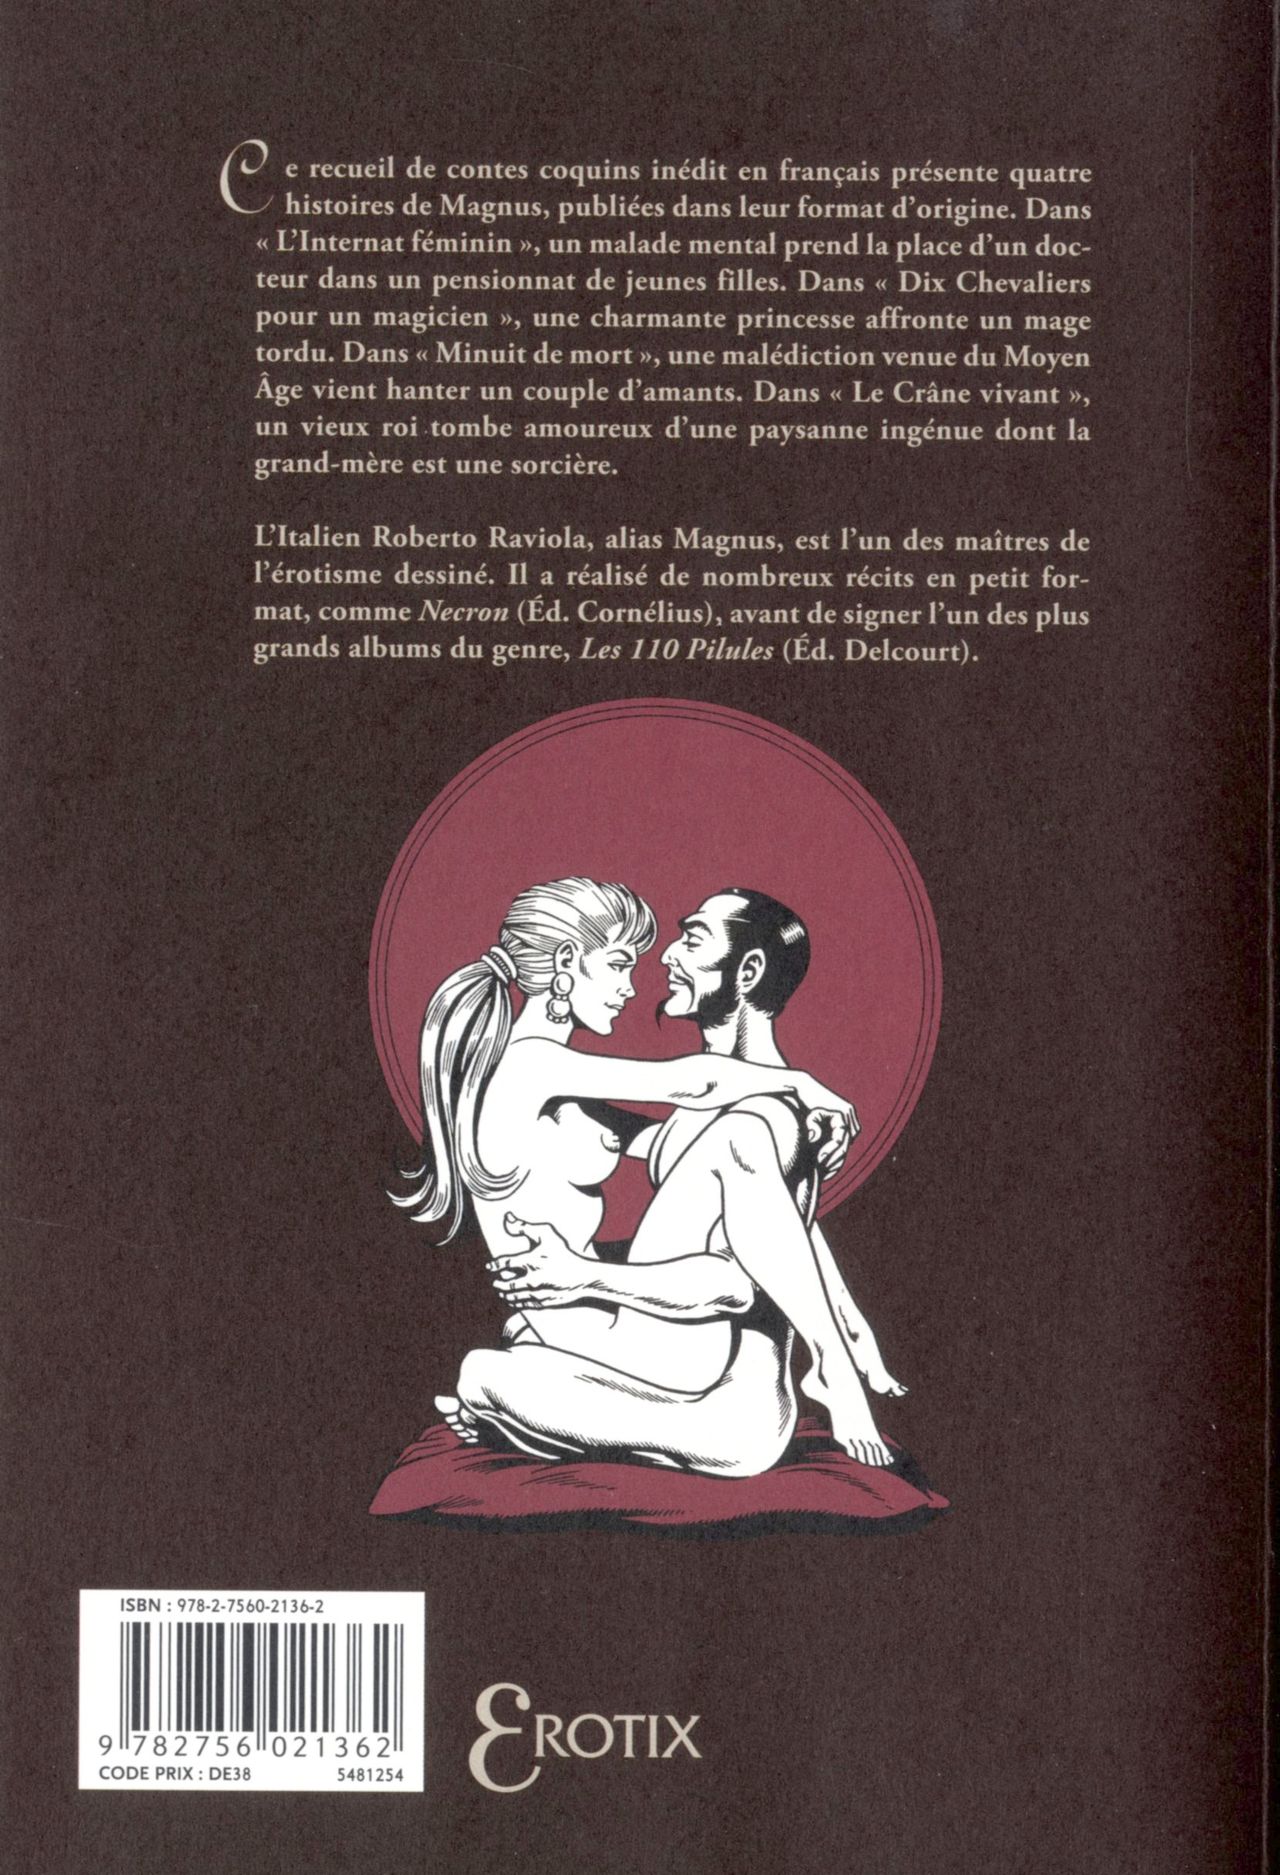 Linternat féminin & autres contes coquins numero d'image 190